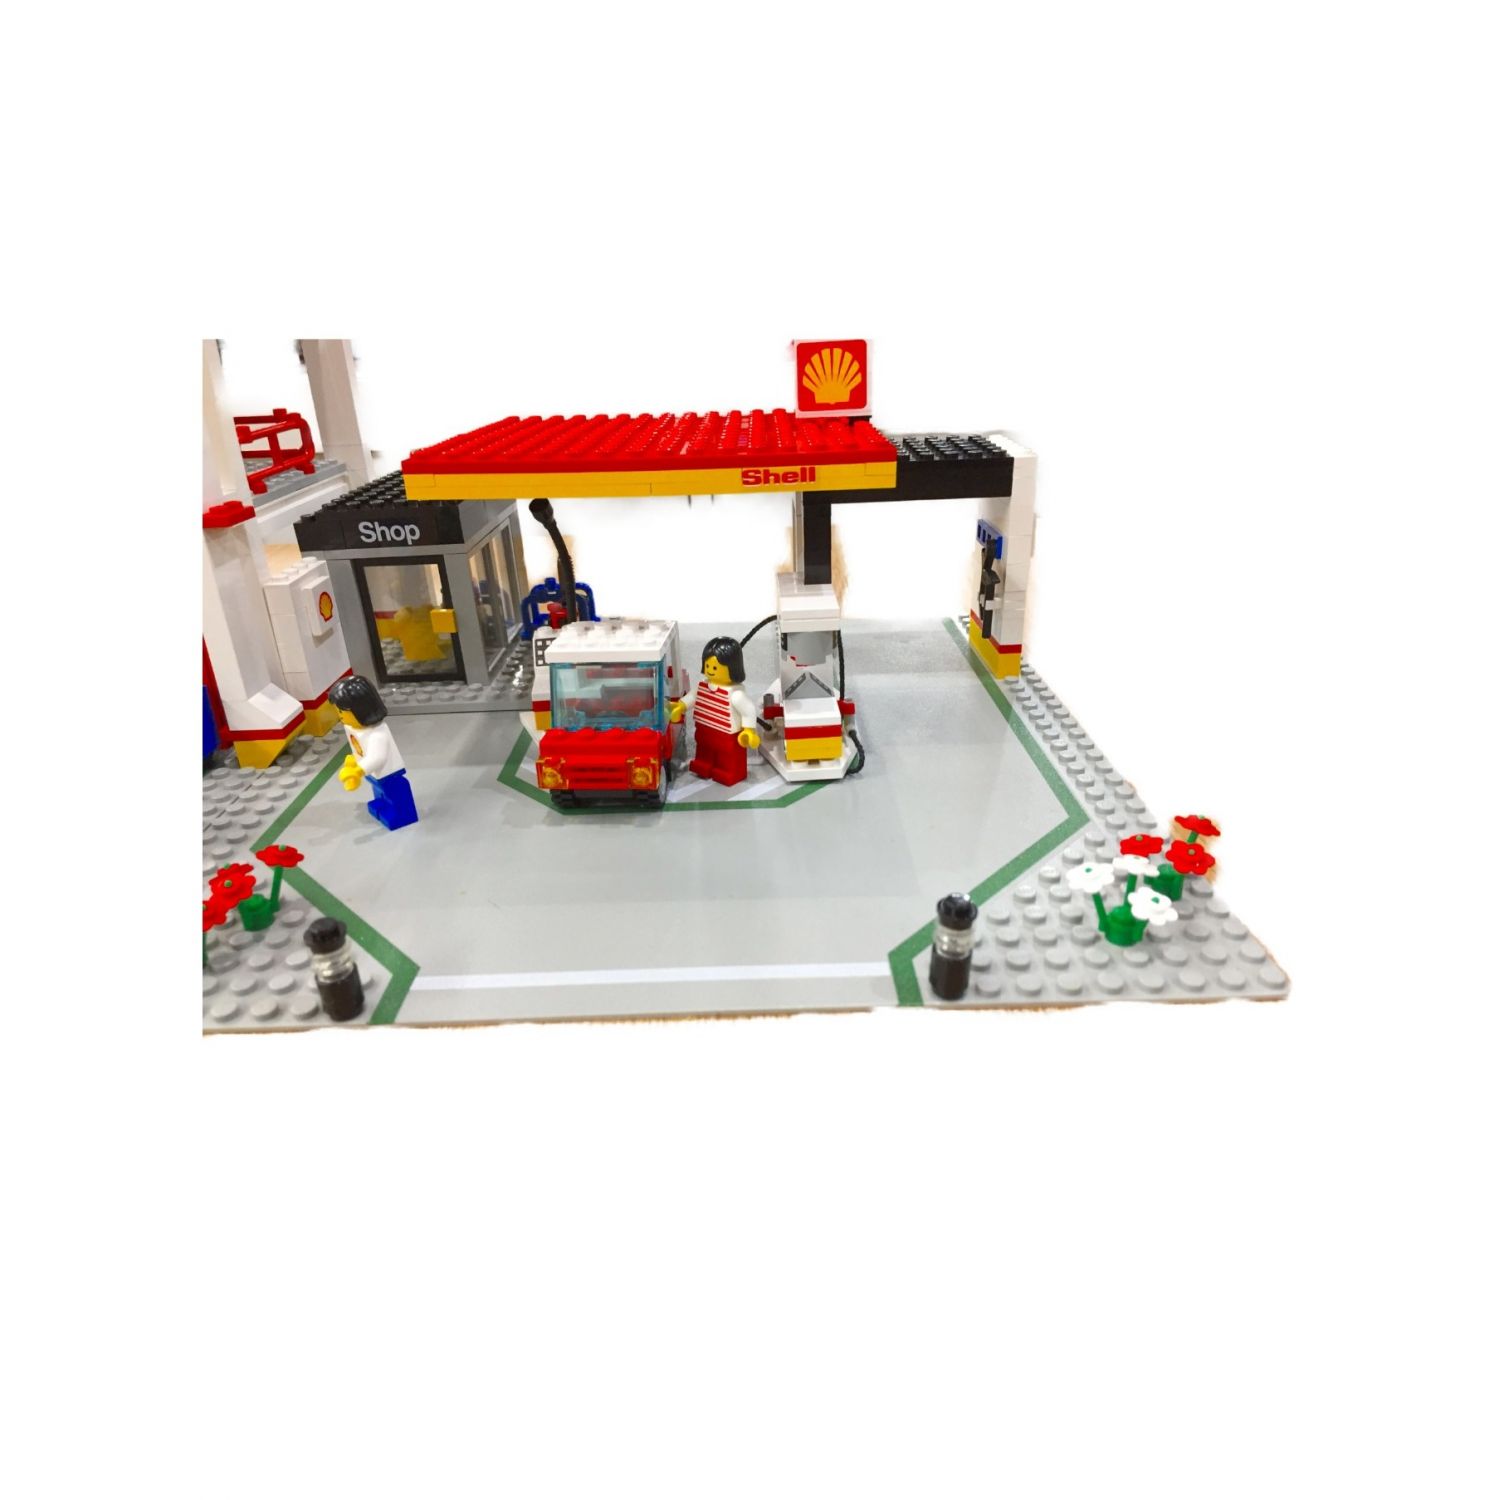 LEGO (レゴ) レゴブロック パーキングセンターレゴランド ＃6394